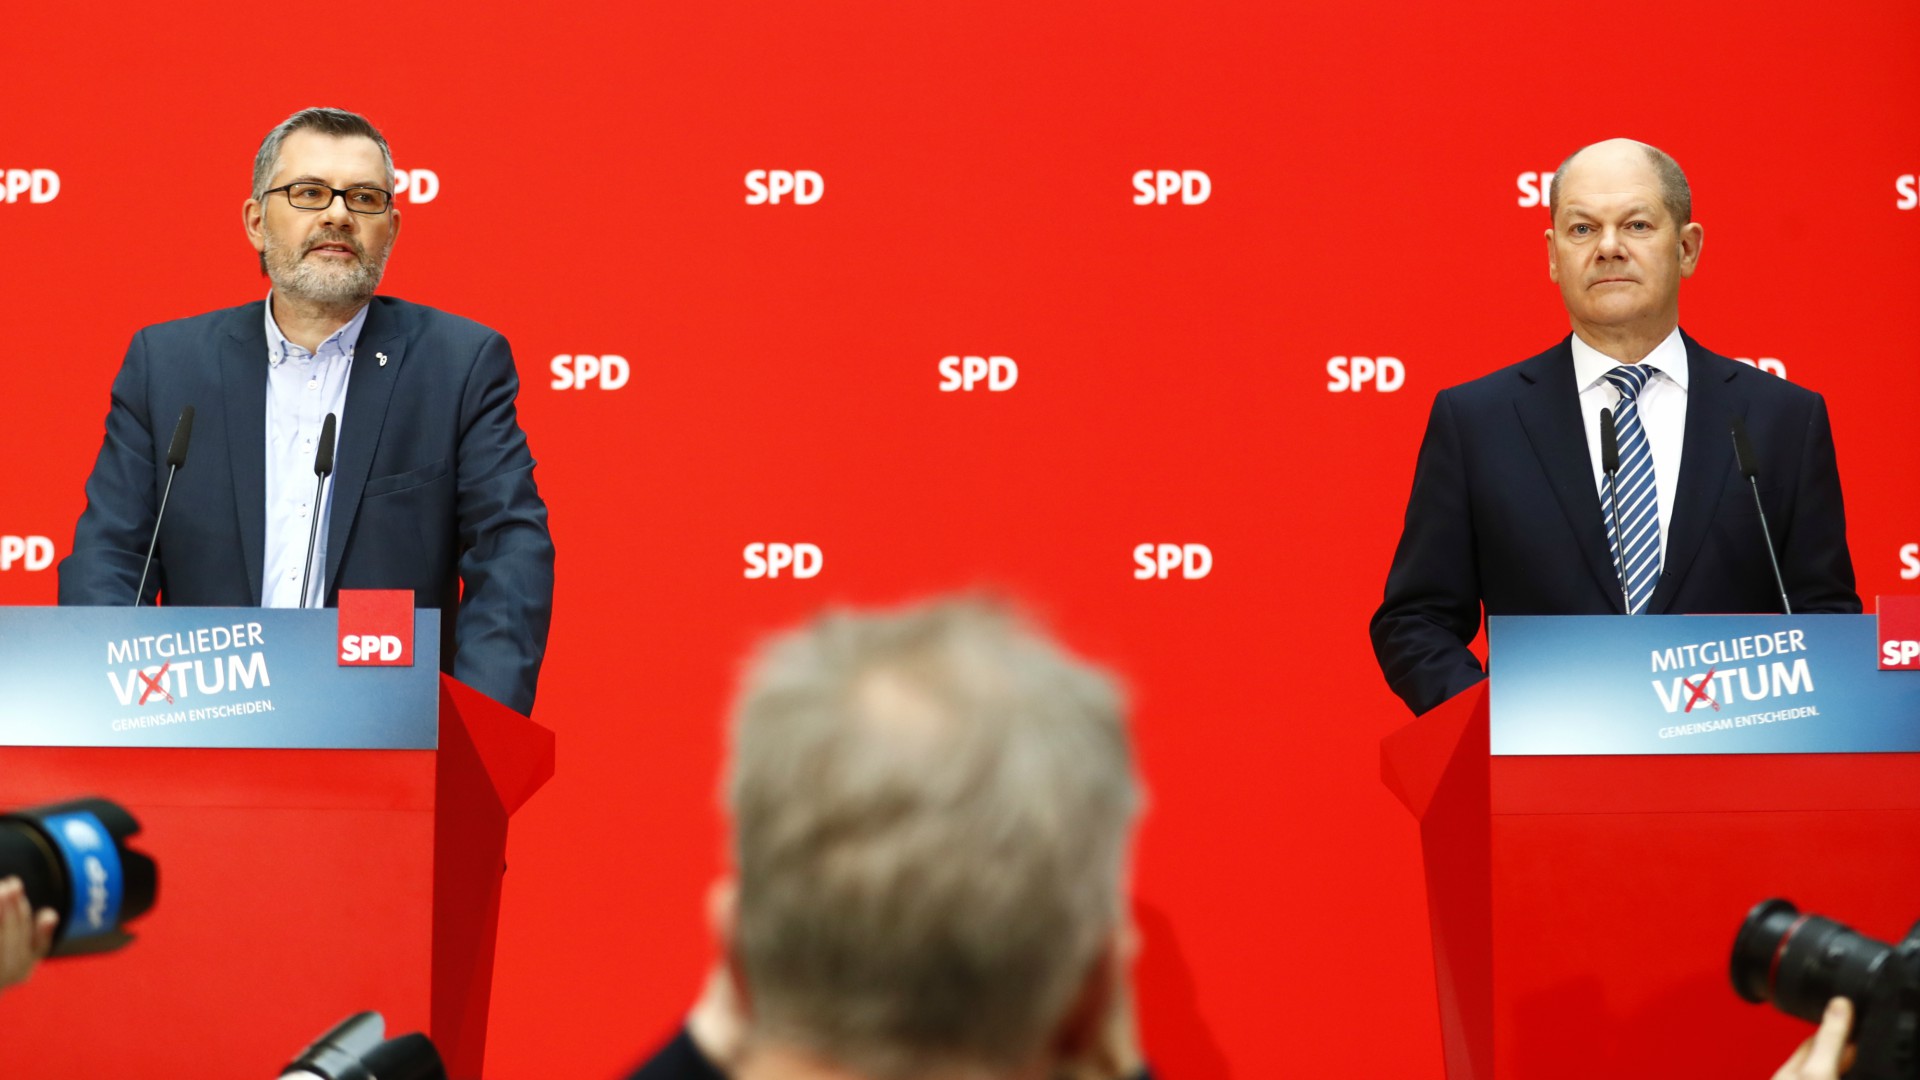 Las bases del SPD aprueban una nueva coalición con la canciller Angela Merkel